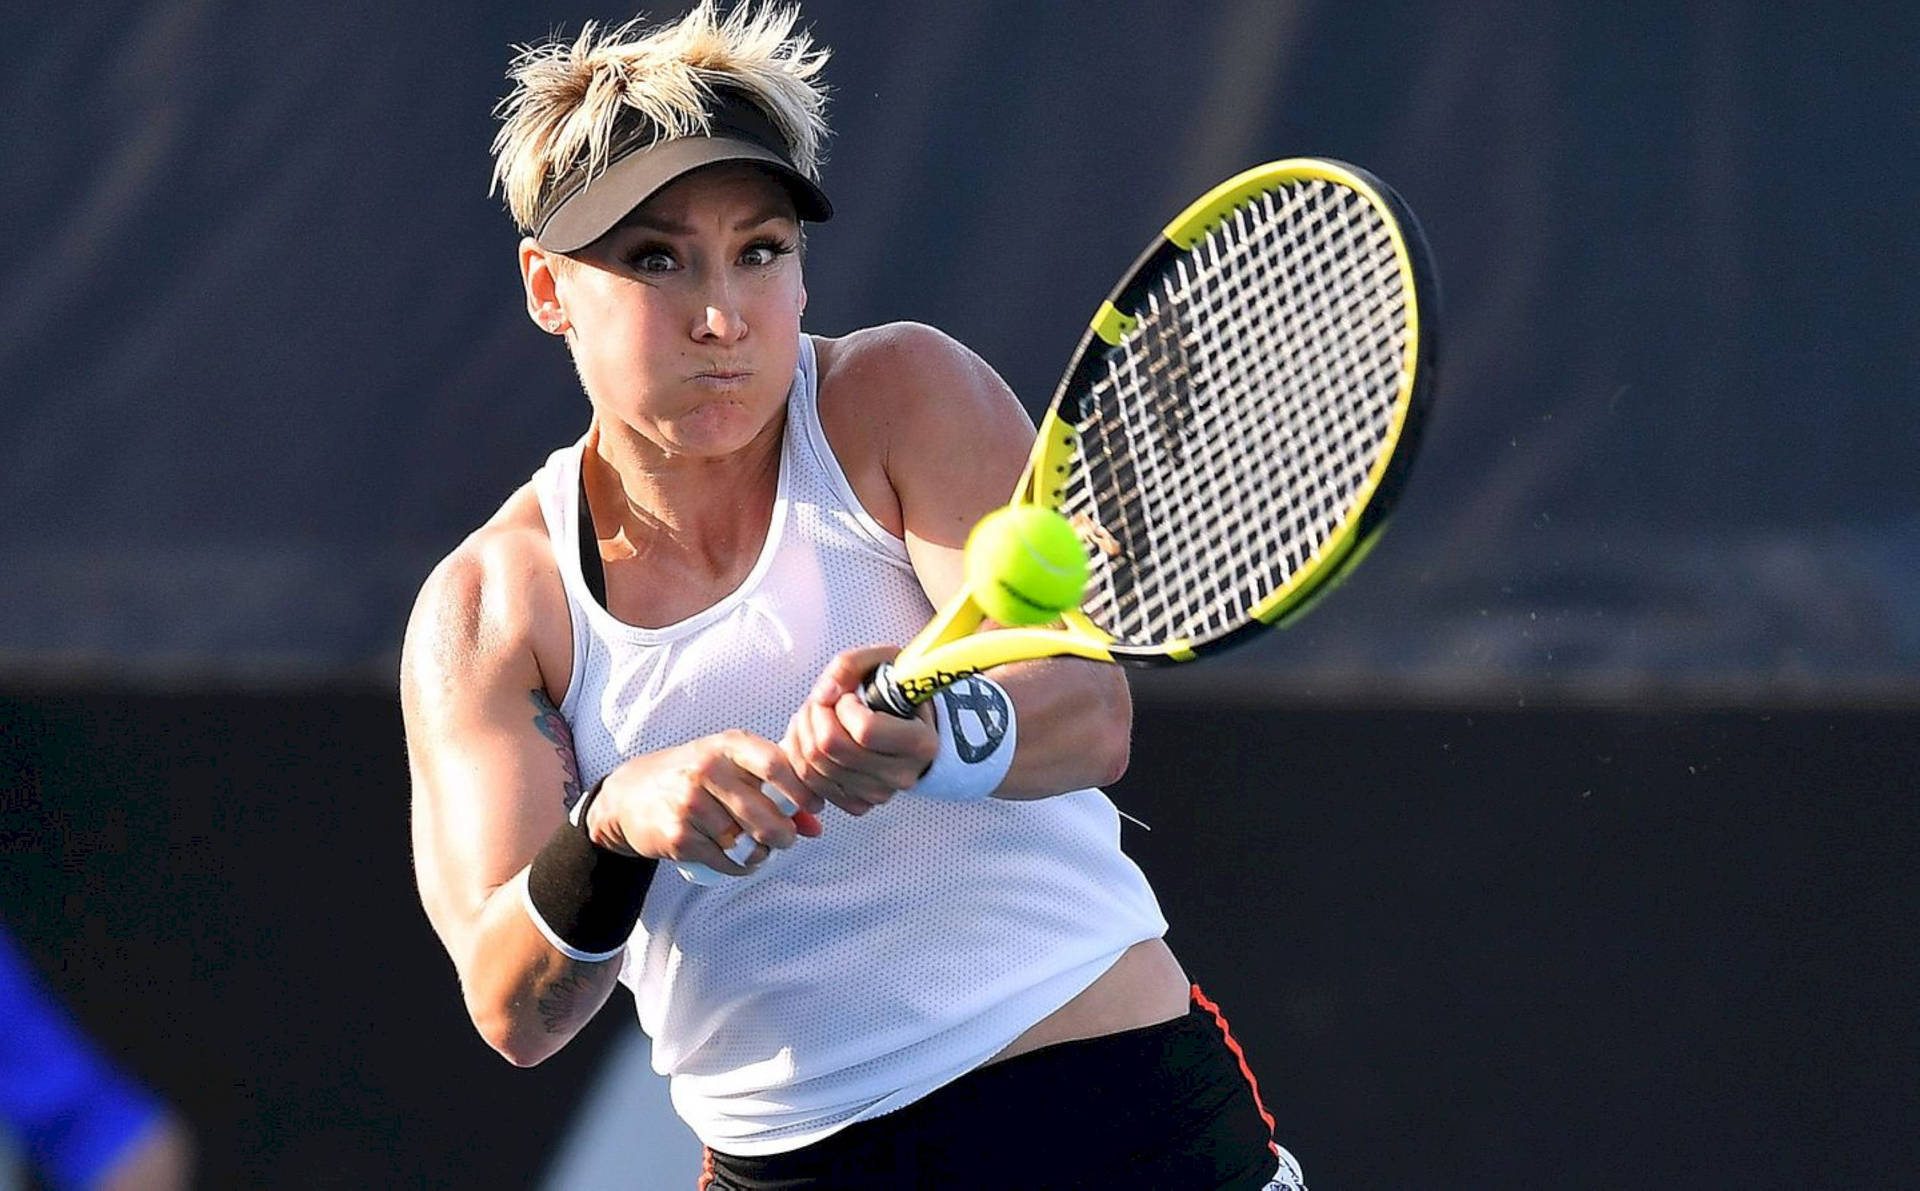 Playing Tennis Bethanie Mattek-sands Wallpaper